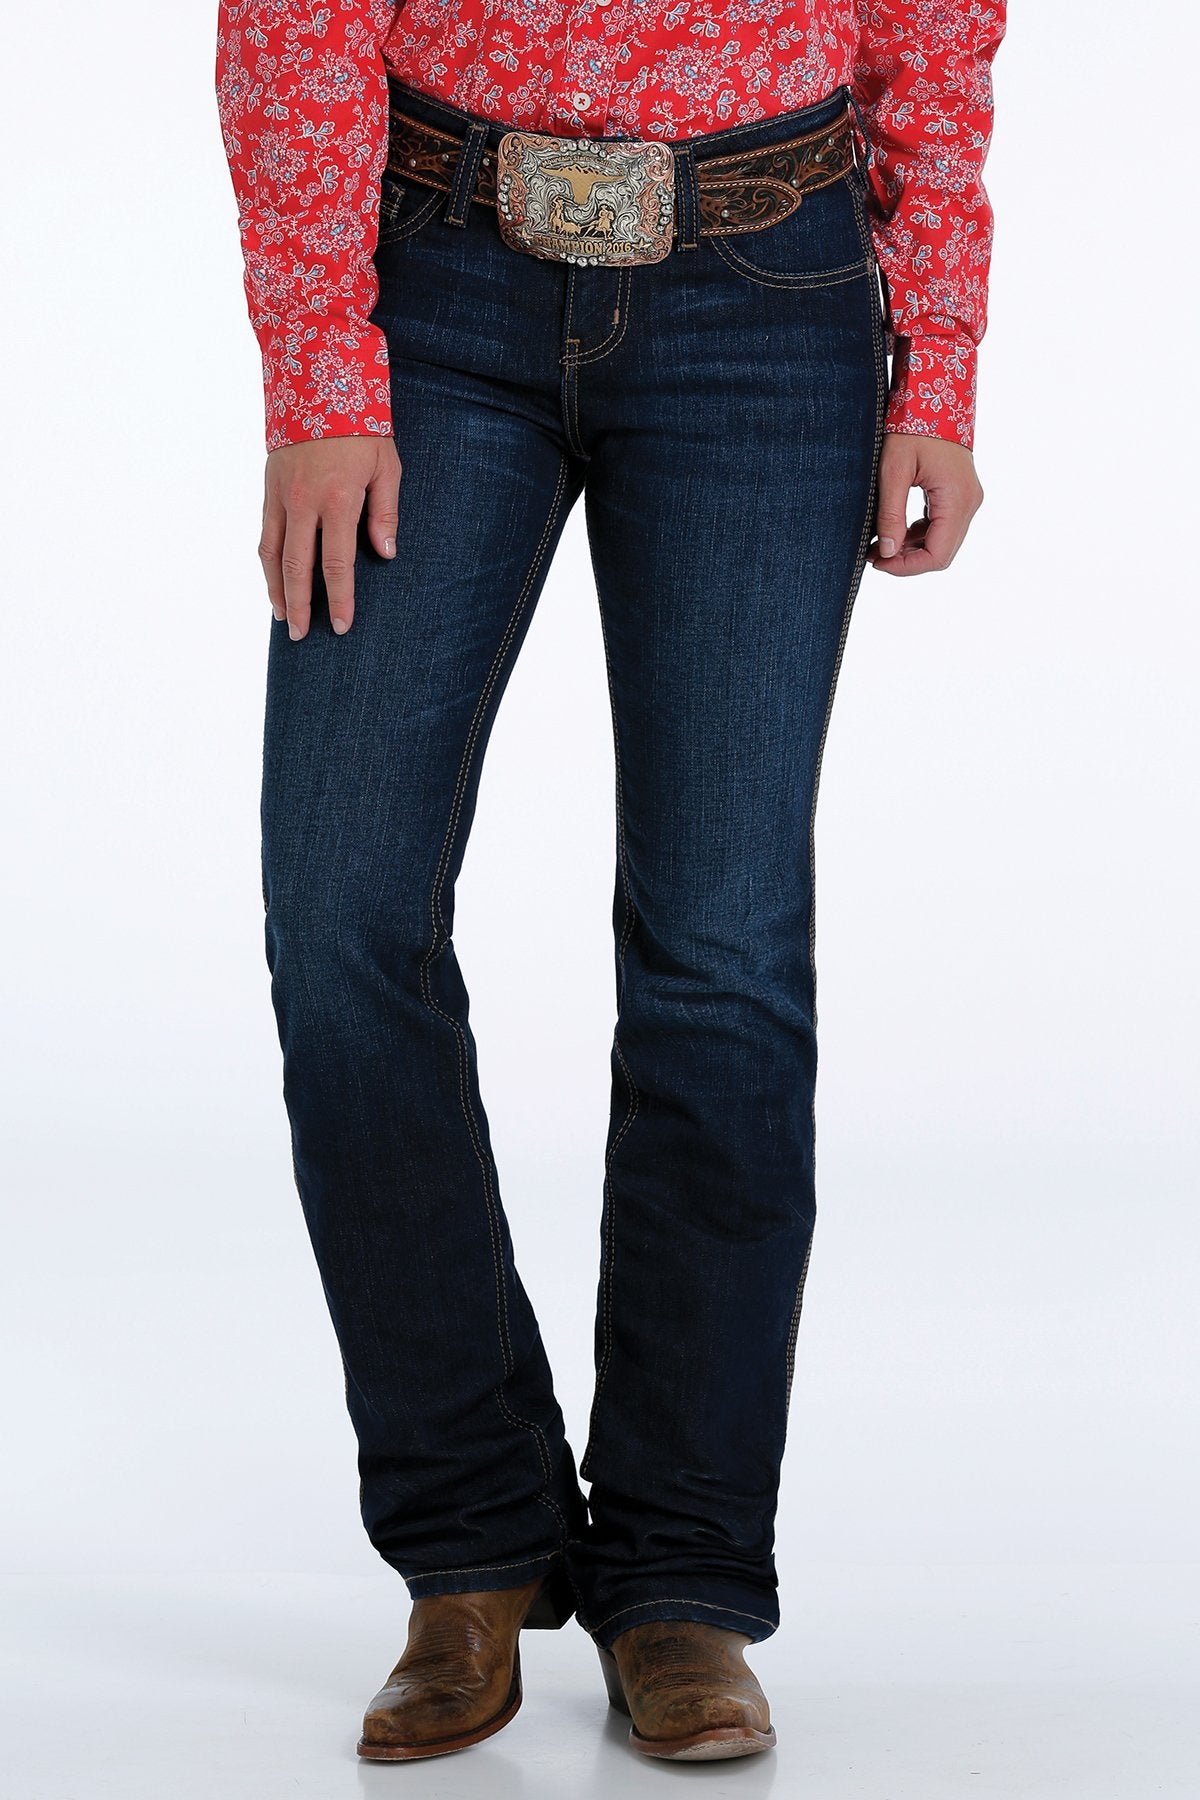 Cinch Shannon Ladies Slim Fit Jeans - MJ82553001